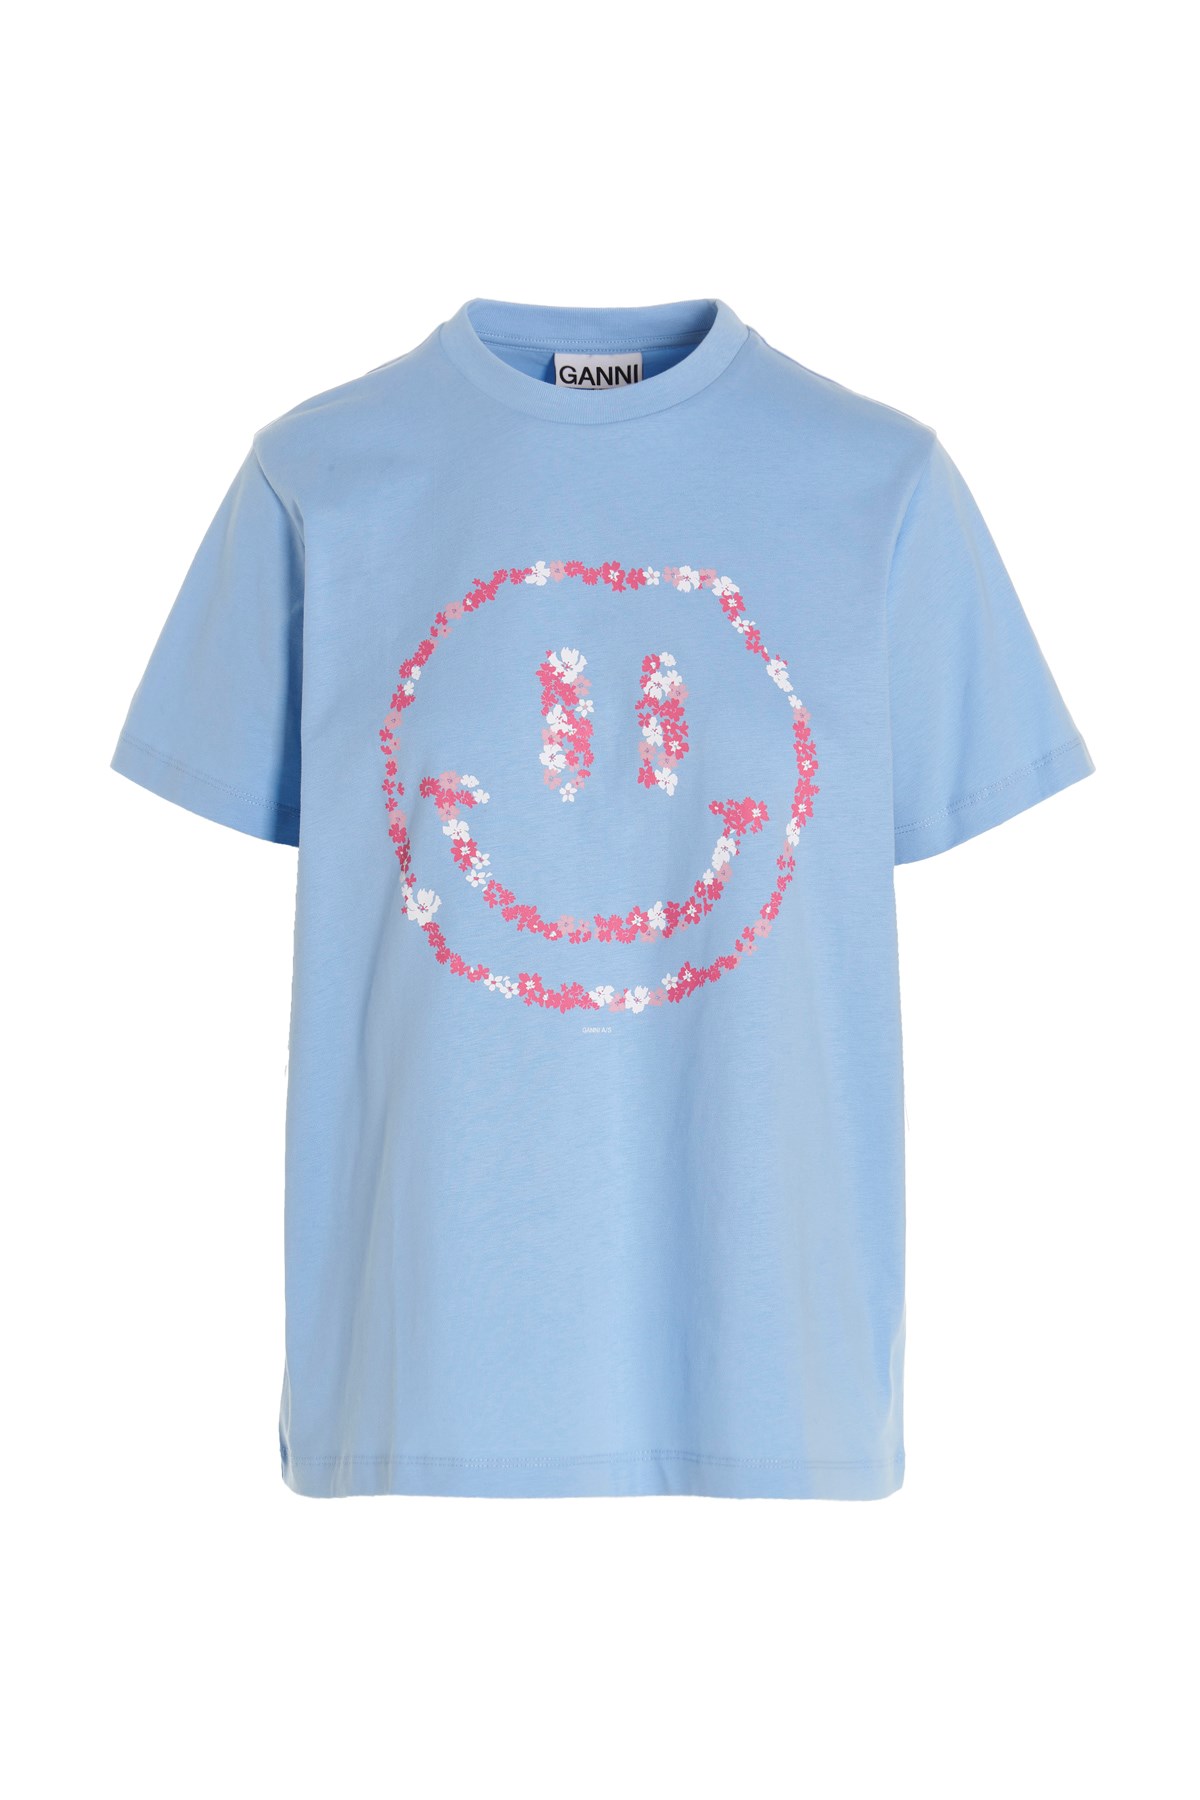 GANNI T-Shirt Mit Druck 'Smile'